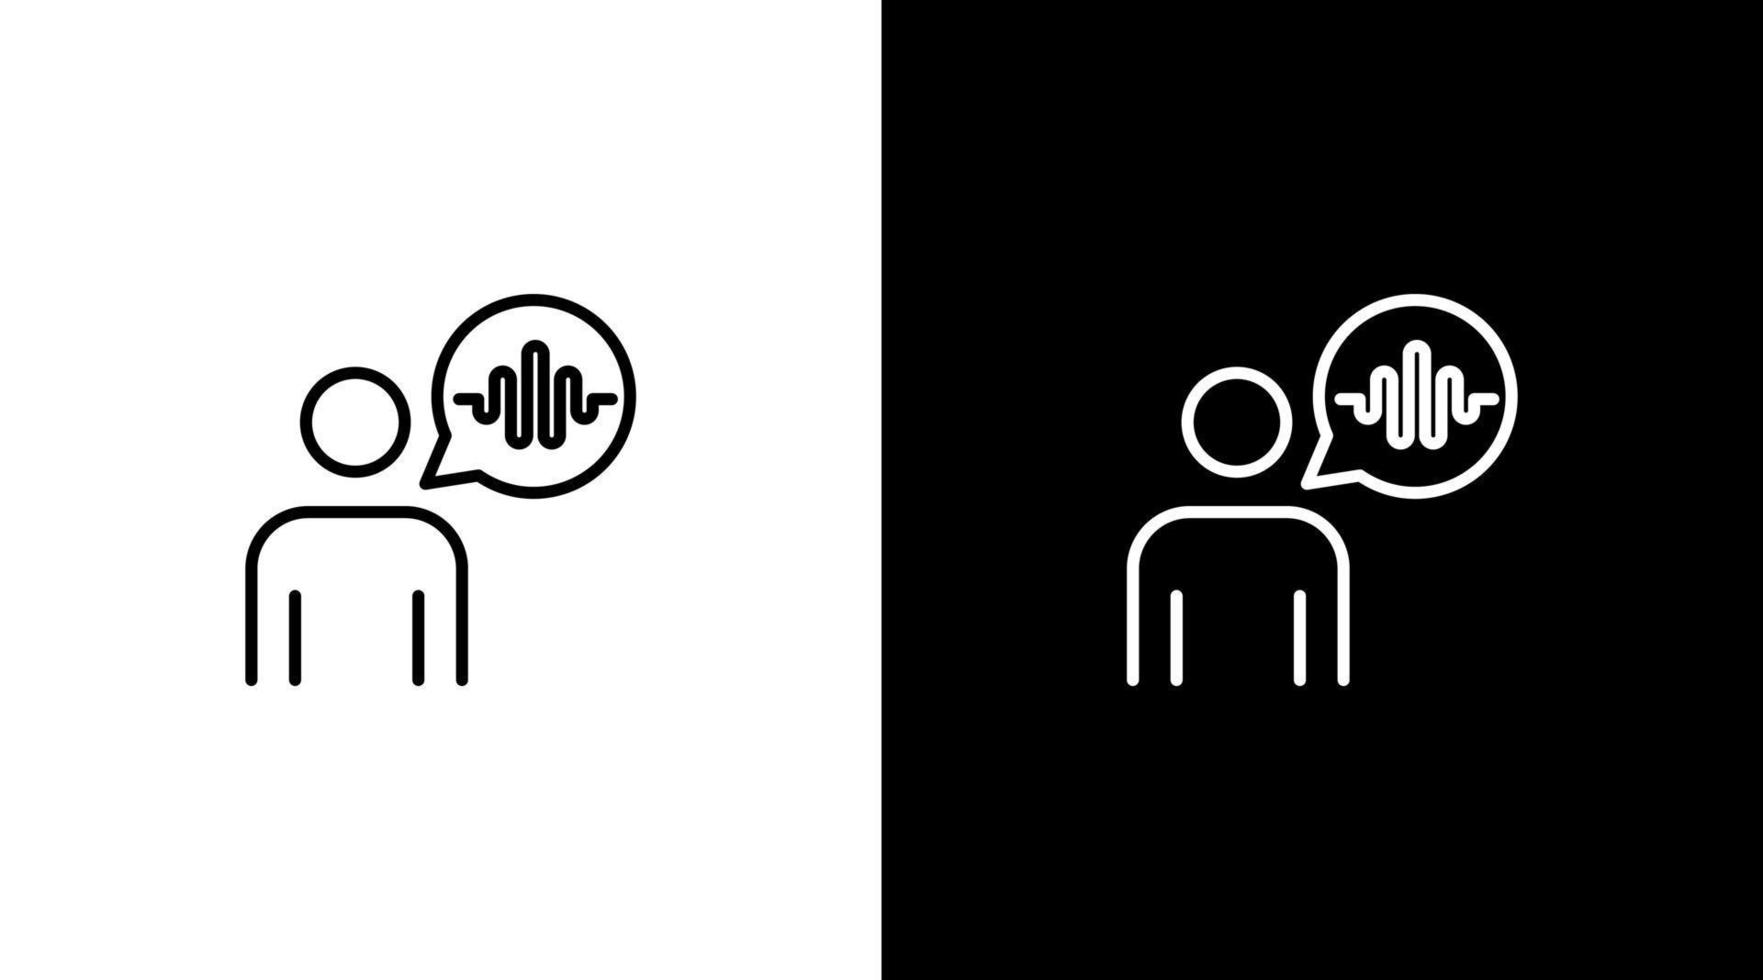 humano voz diálogo logo audio sonido ola tecnología contorno icono diseño vector